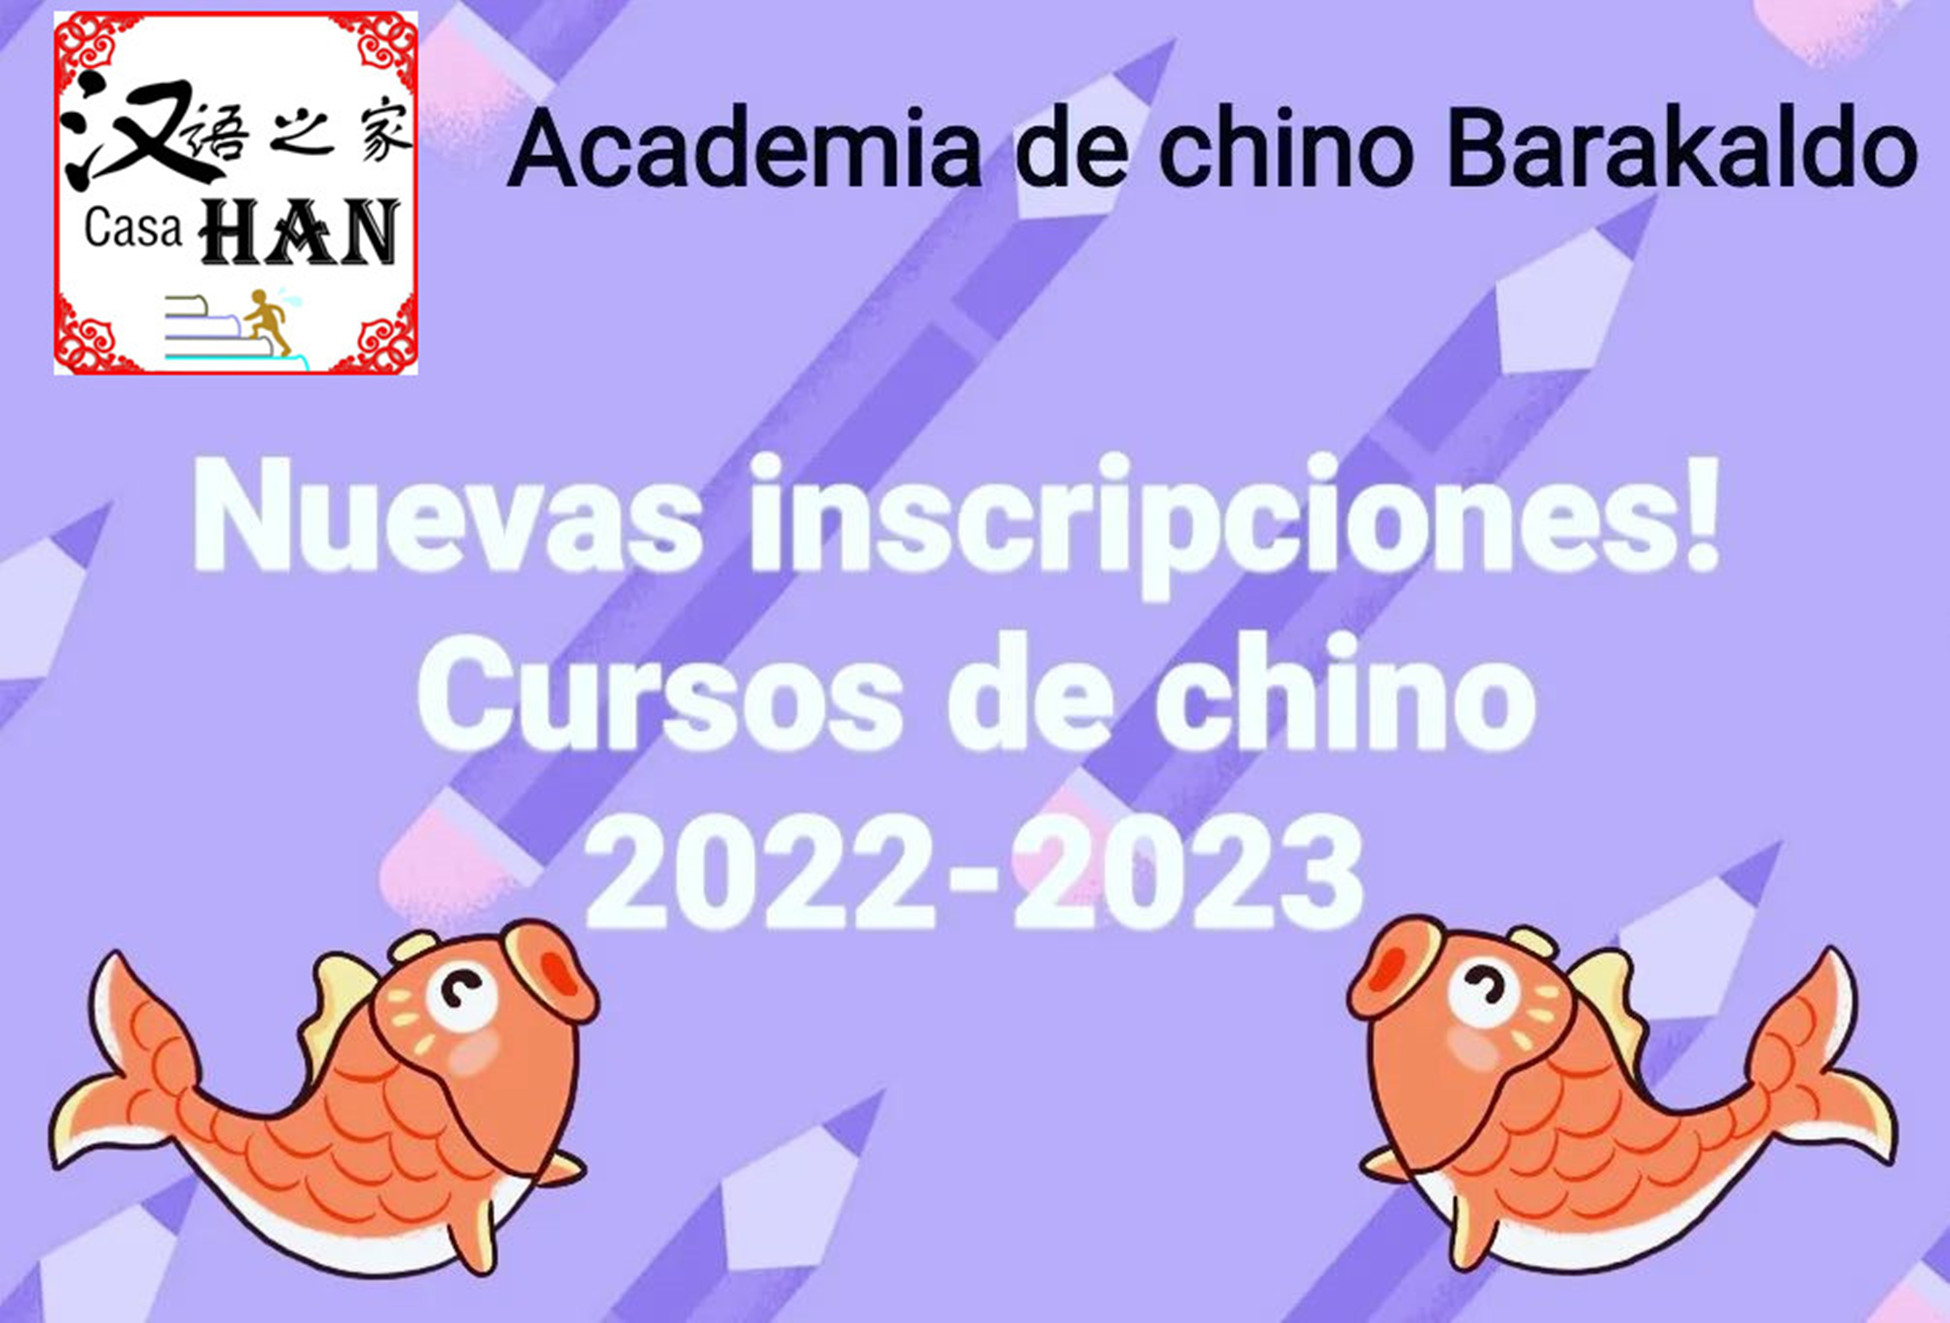 CURSO DE CHINO 2022/2023: Servicios  de Academia de chino Barakaldo